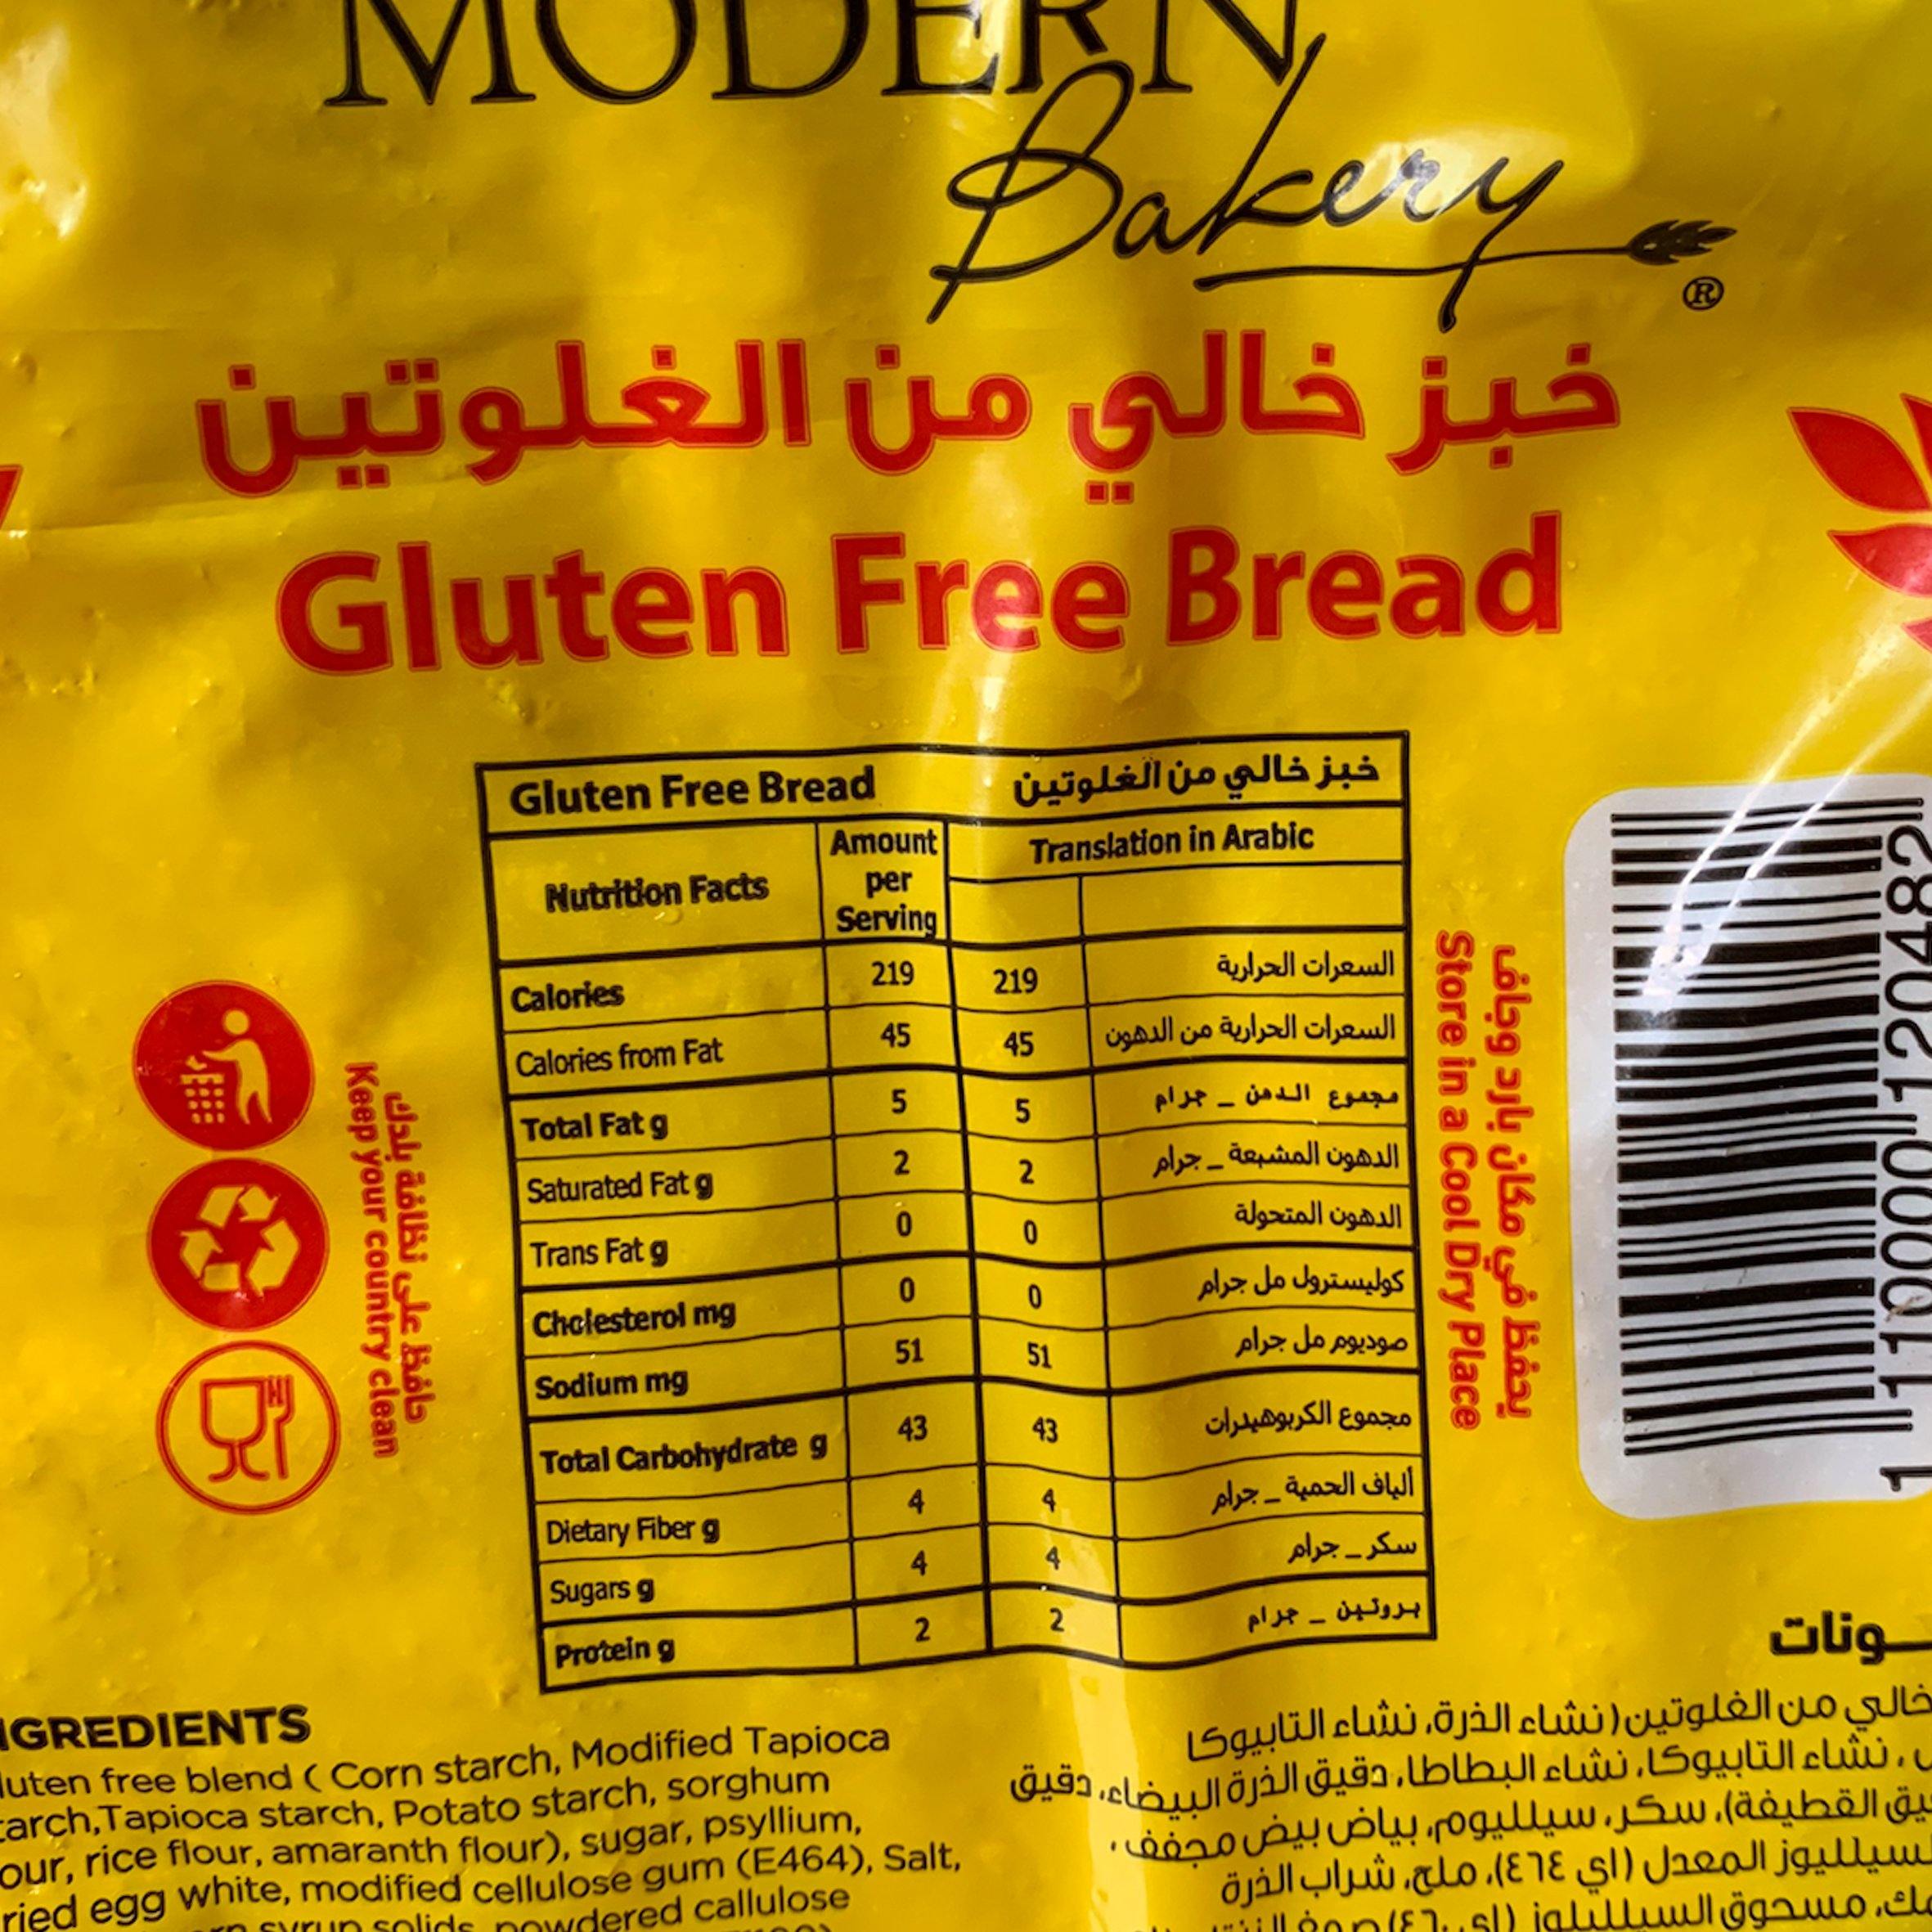 خبز خالي من الجلوتين  من المخبز الحديث /الشحن المبرد للشرقية و الرياض فقط - الغذاء الحيوي